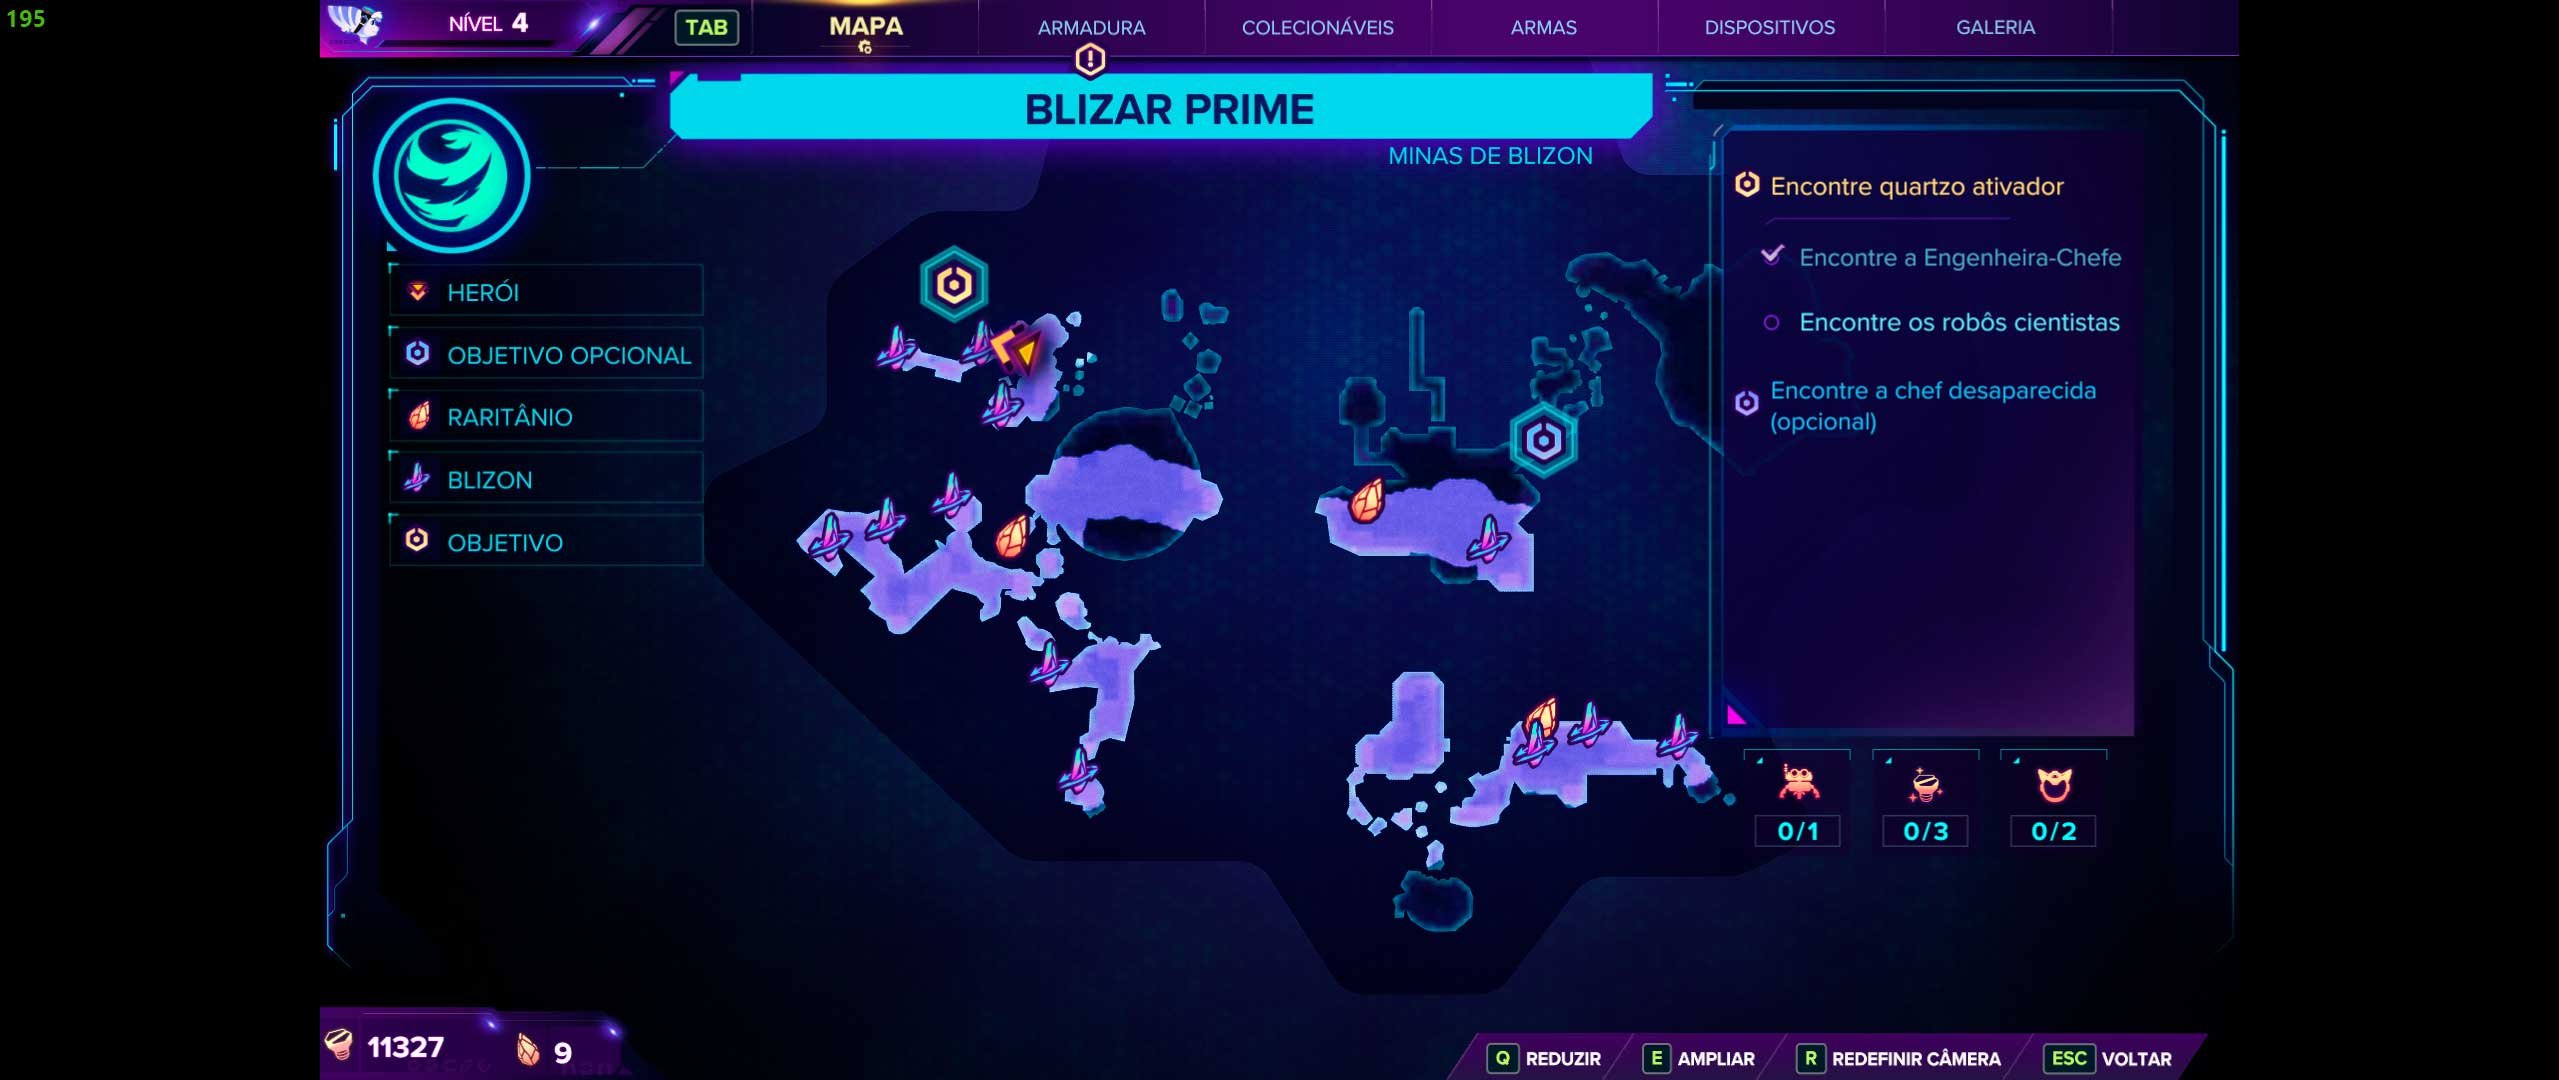 Descrição da Imagem: Mapa do jogo